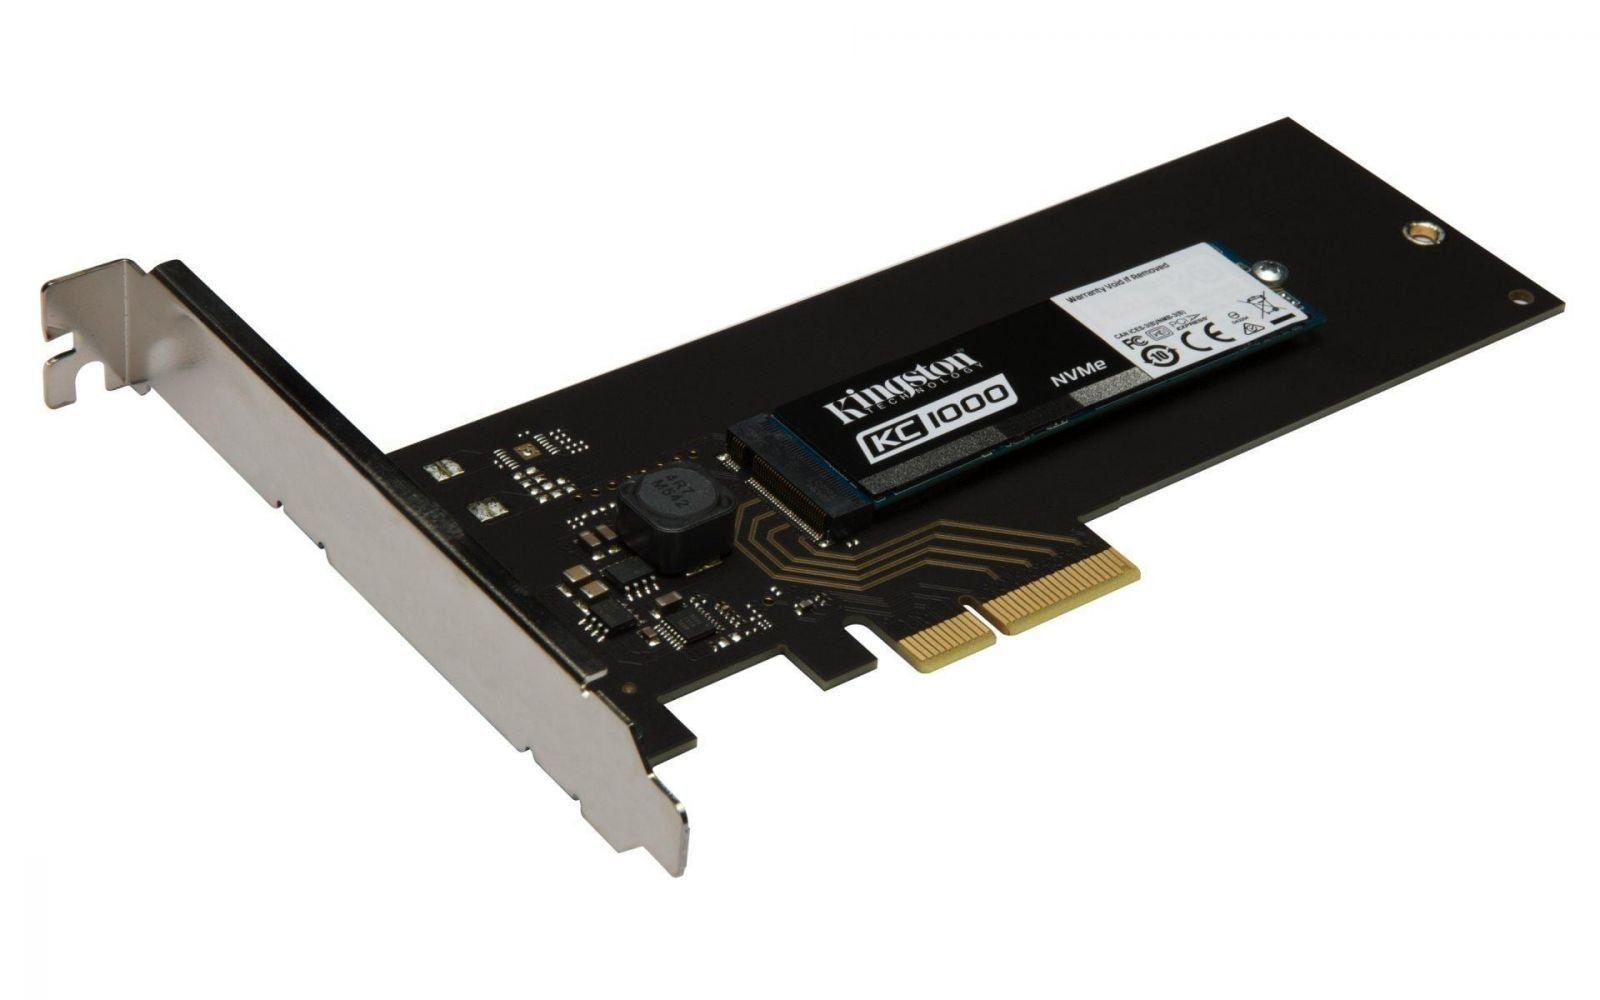 Computex 2017. Kingston сделала накопитель KC1000 NVMe PCIe (KC1000 SSD M.2)